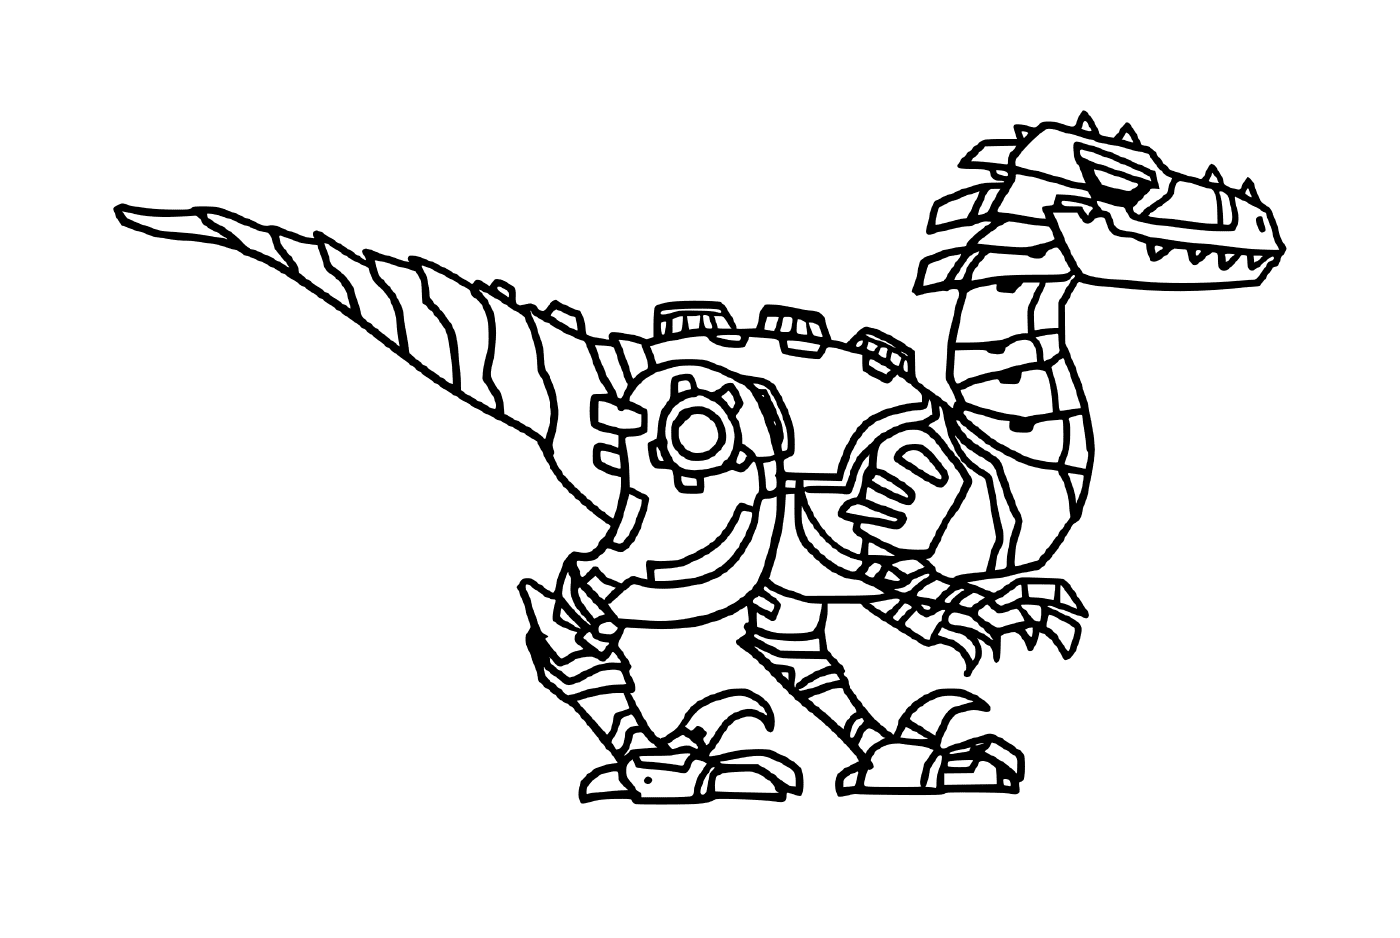  Tiranosaurio, robot de dinosaurios 